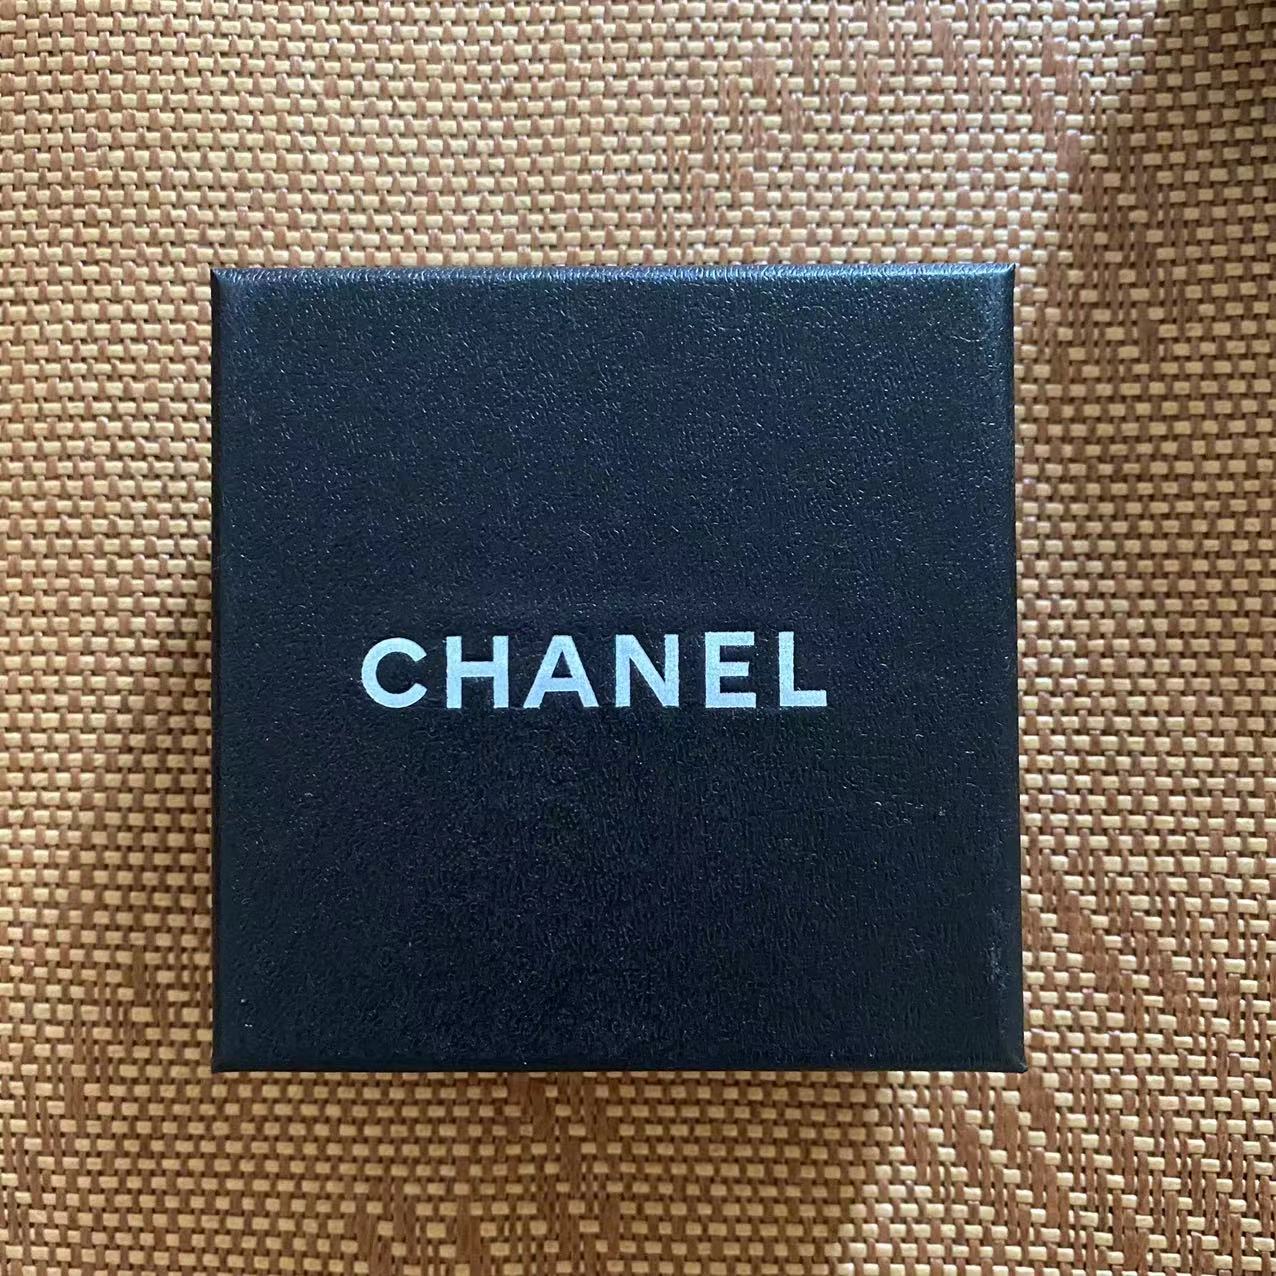 Chanel jewelry box 1pcs